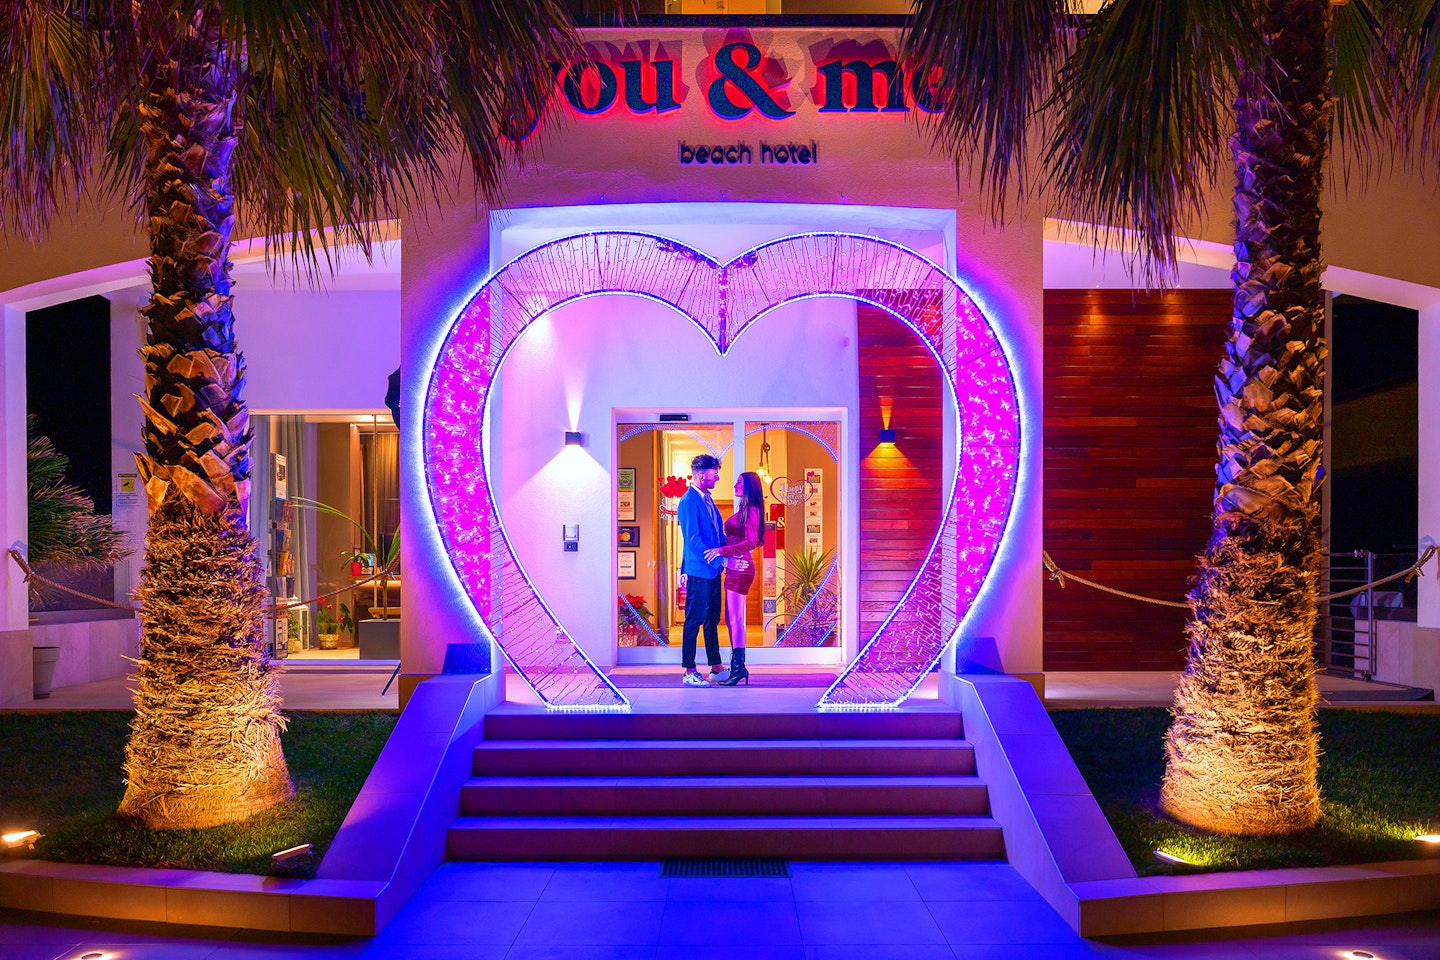 You & Me Beach Hotel - Viserbella